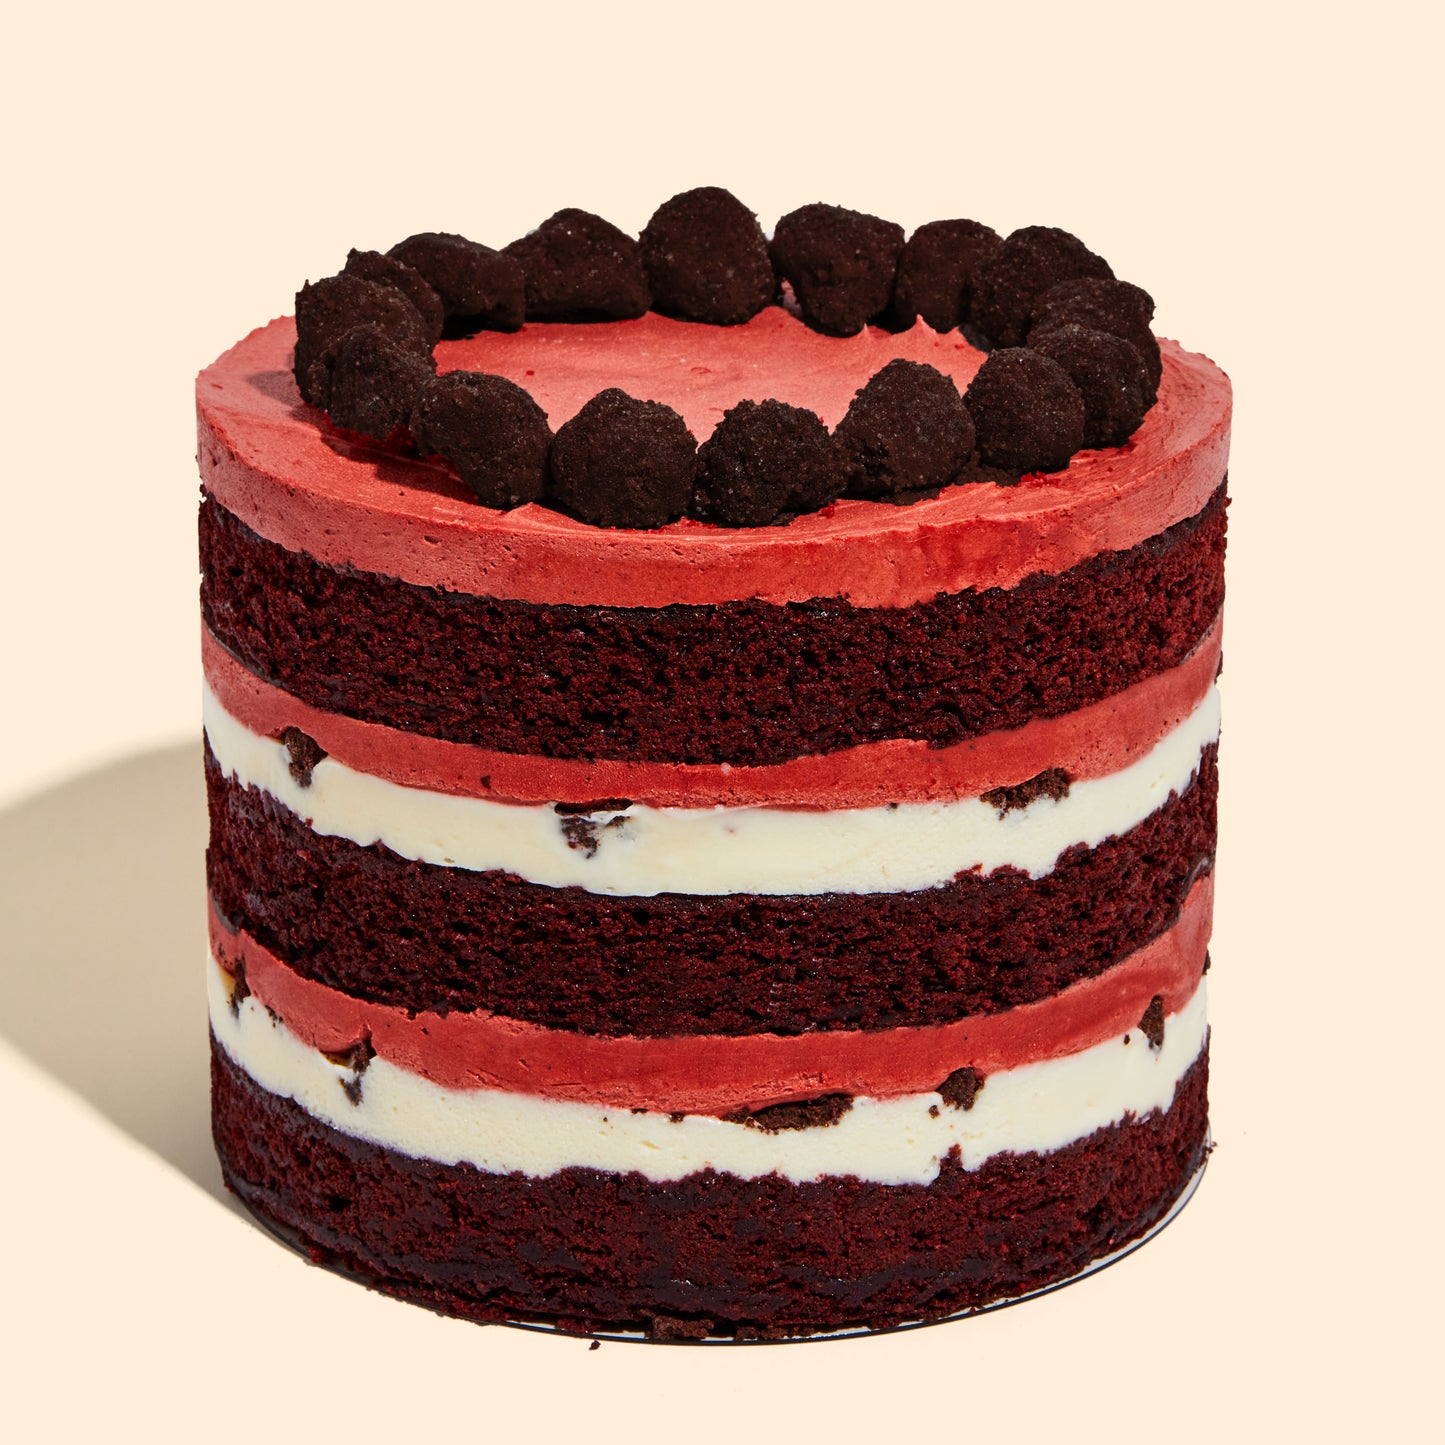 6" Red Velvet Cheesecake Cake Side 